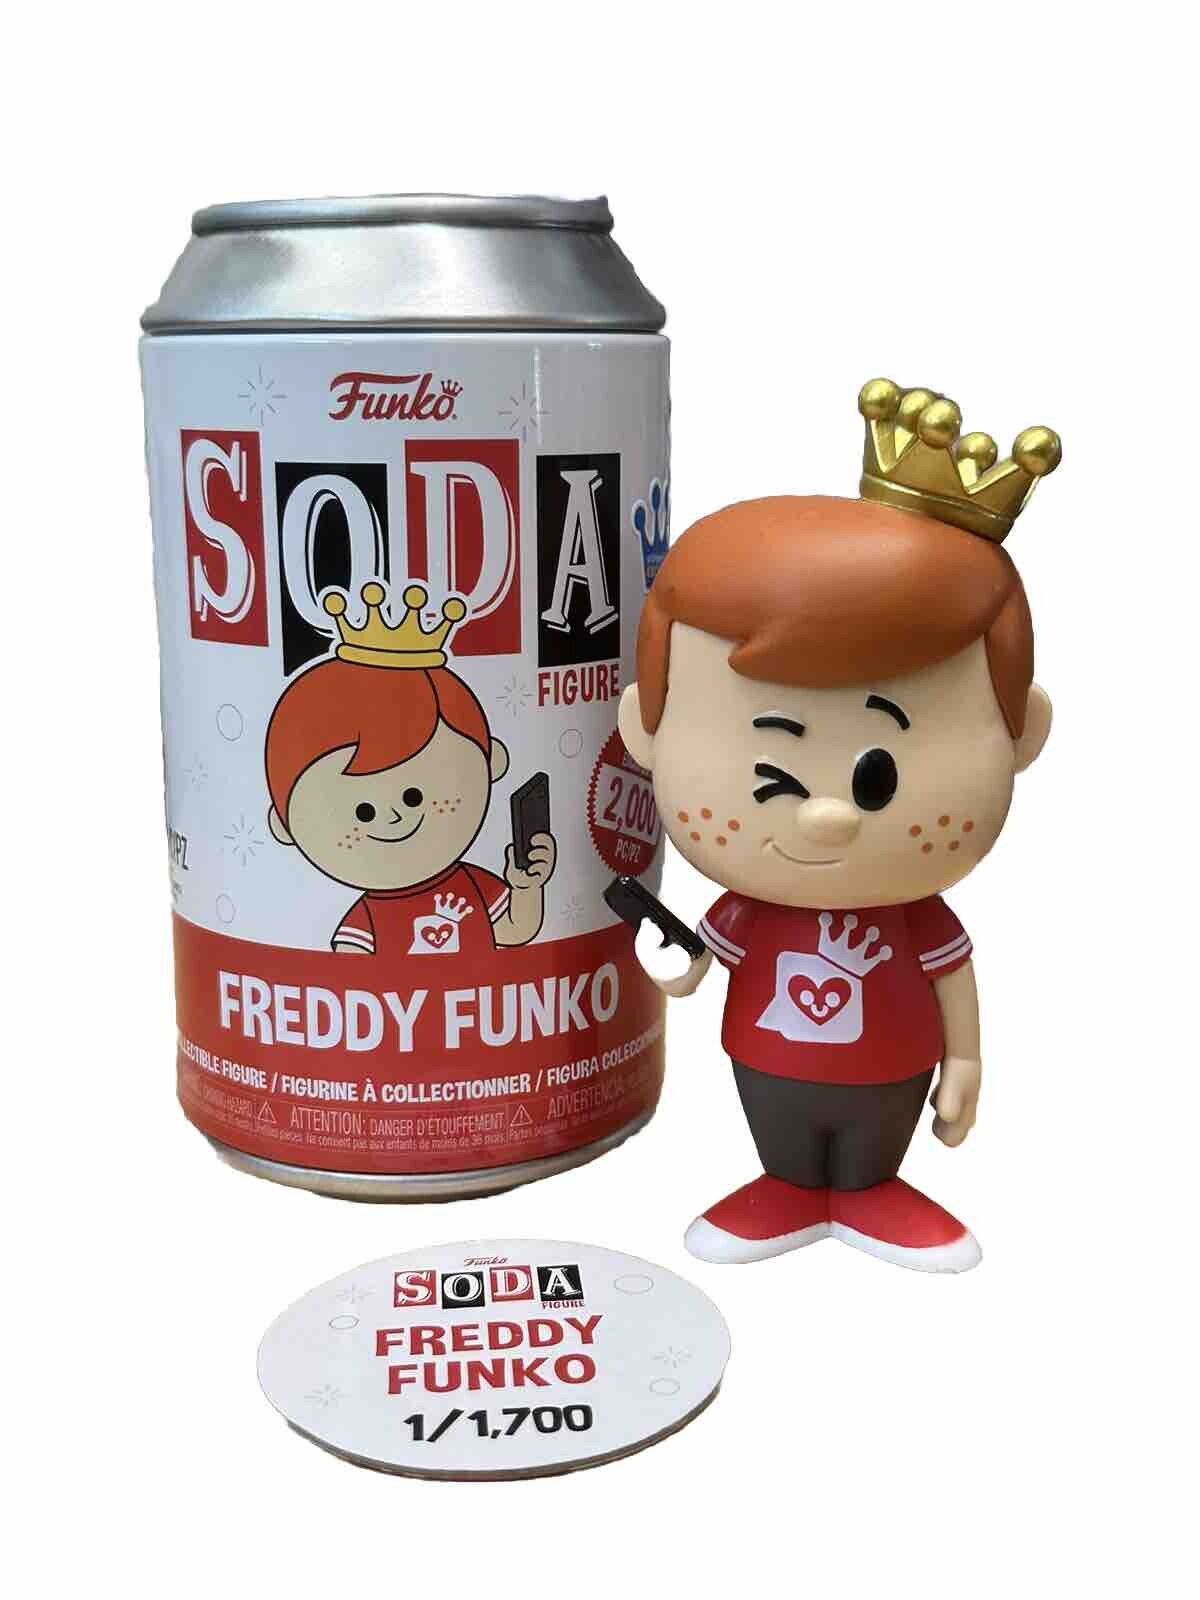 @OriginalFunko Exclusive Freddy Funko Social Media Soda 1/1,700 Common